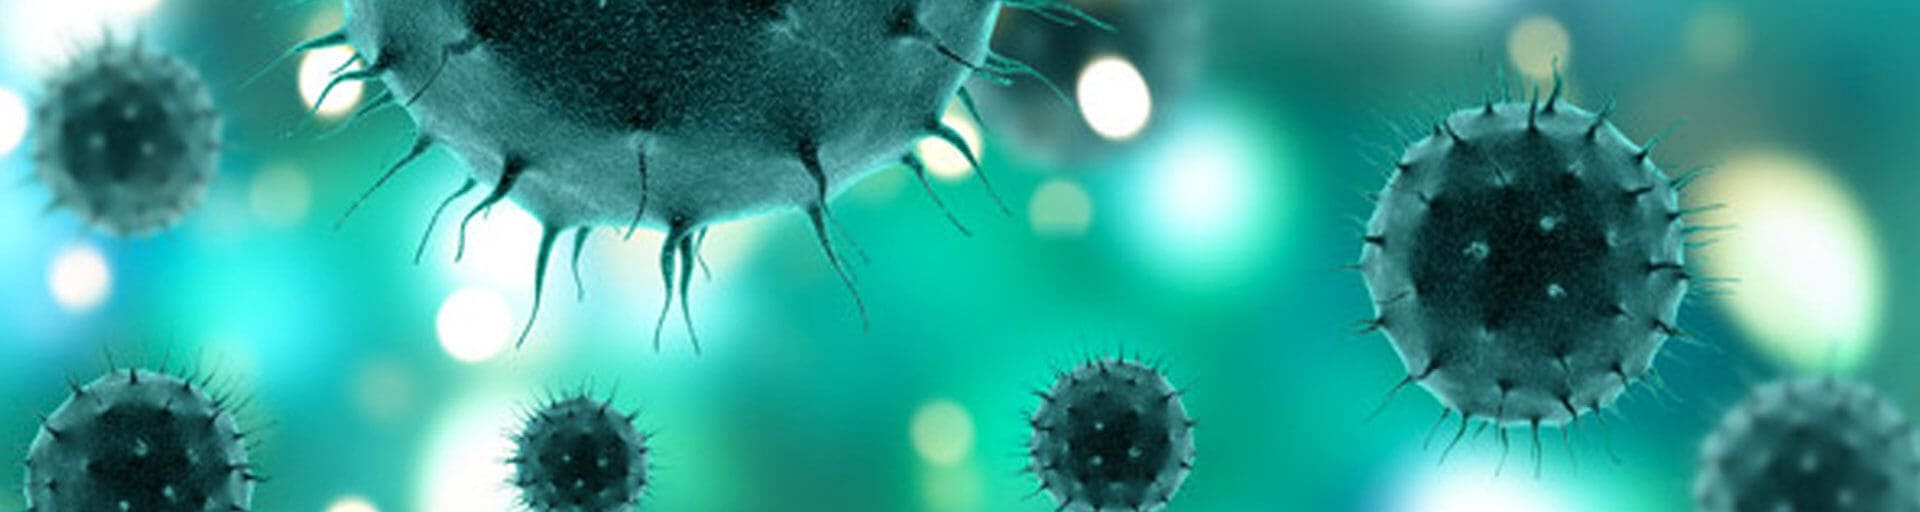 Фигурное катание в коронавирус: стоит ли ждать новый сезон